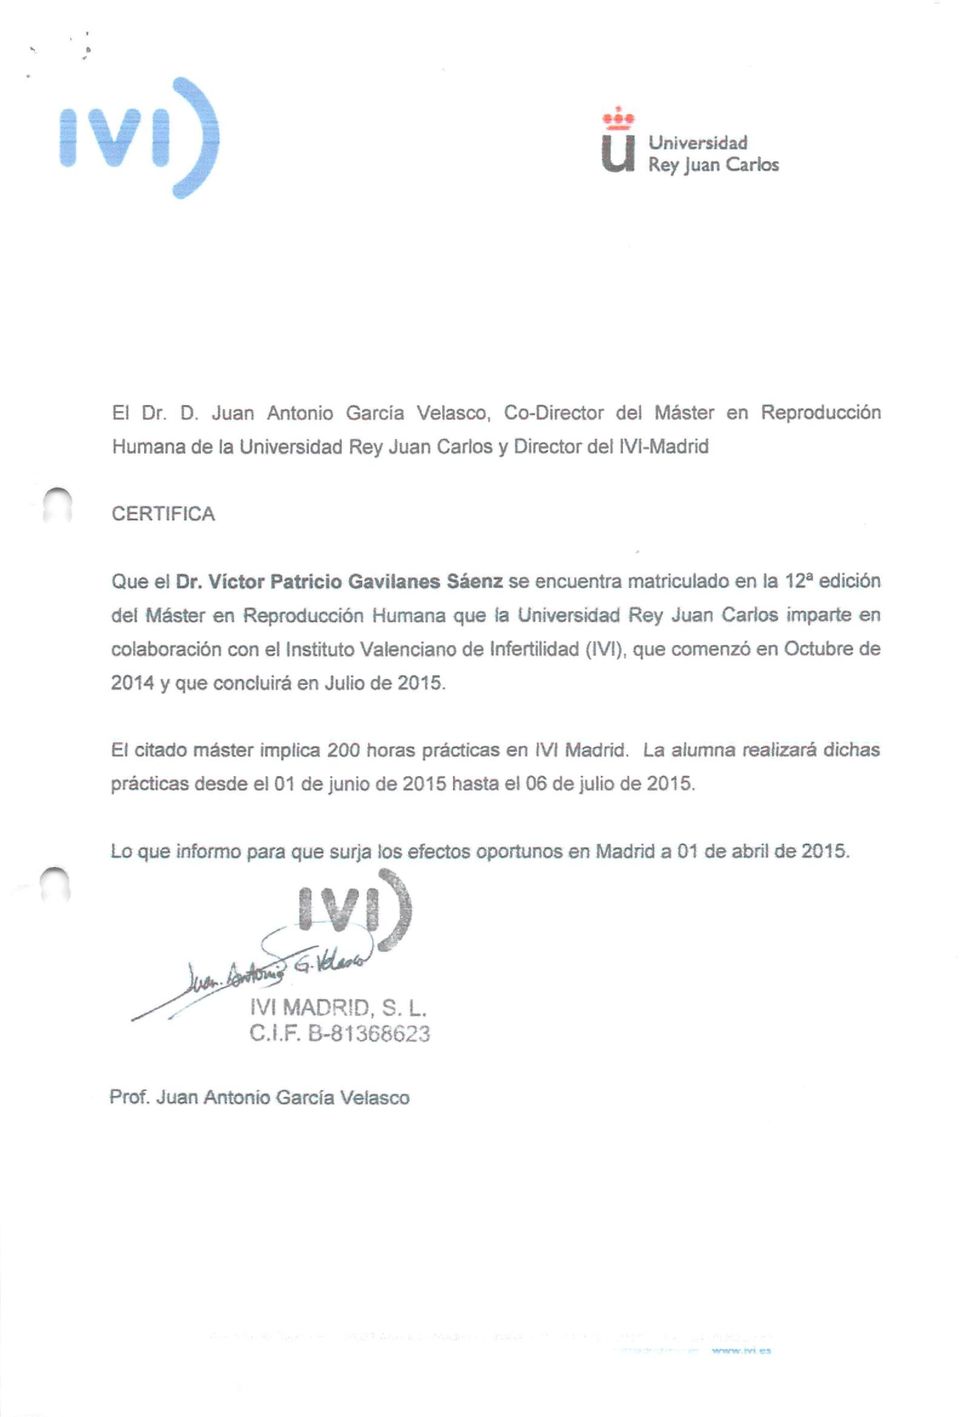 Infertilidad (IVl), que comenzó en Octubre de 2014 y que concluirá en Julio de 2015. El citado máster implica 200 horas prácticas en IVl Madrid.